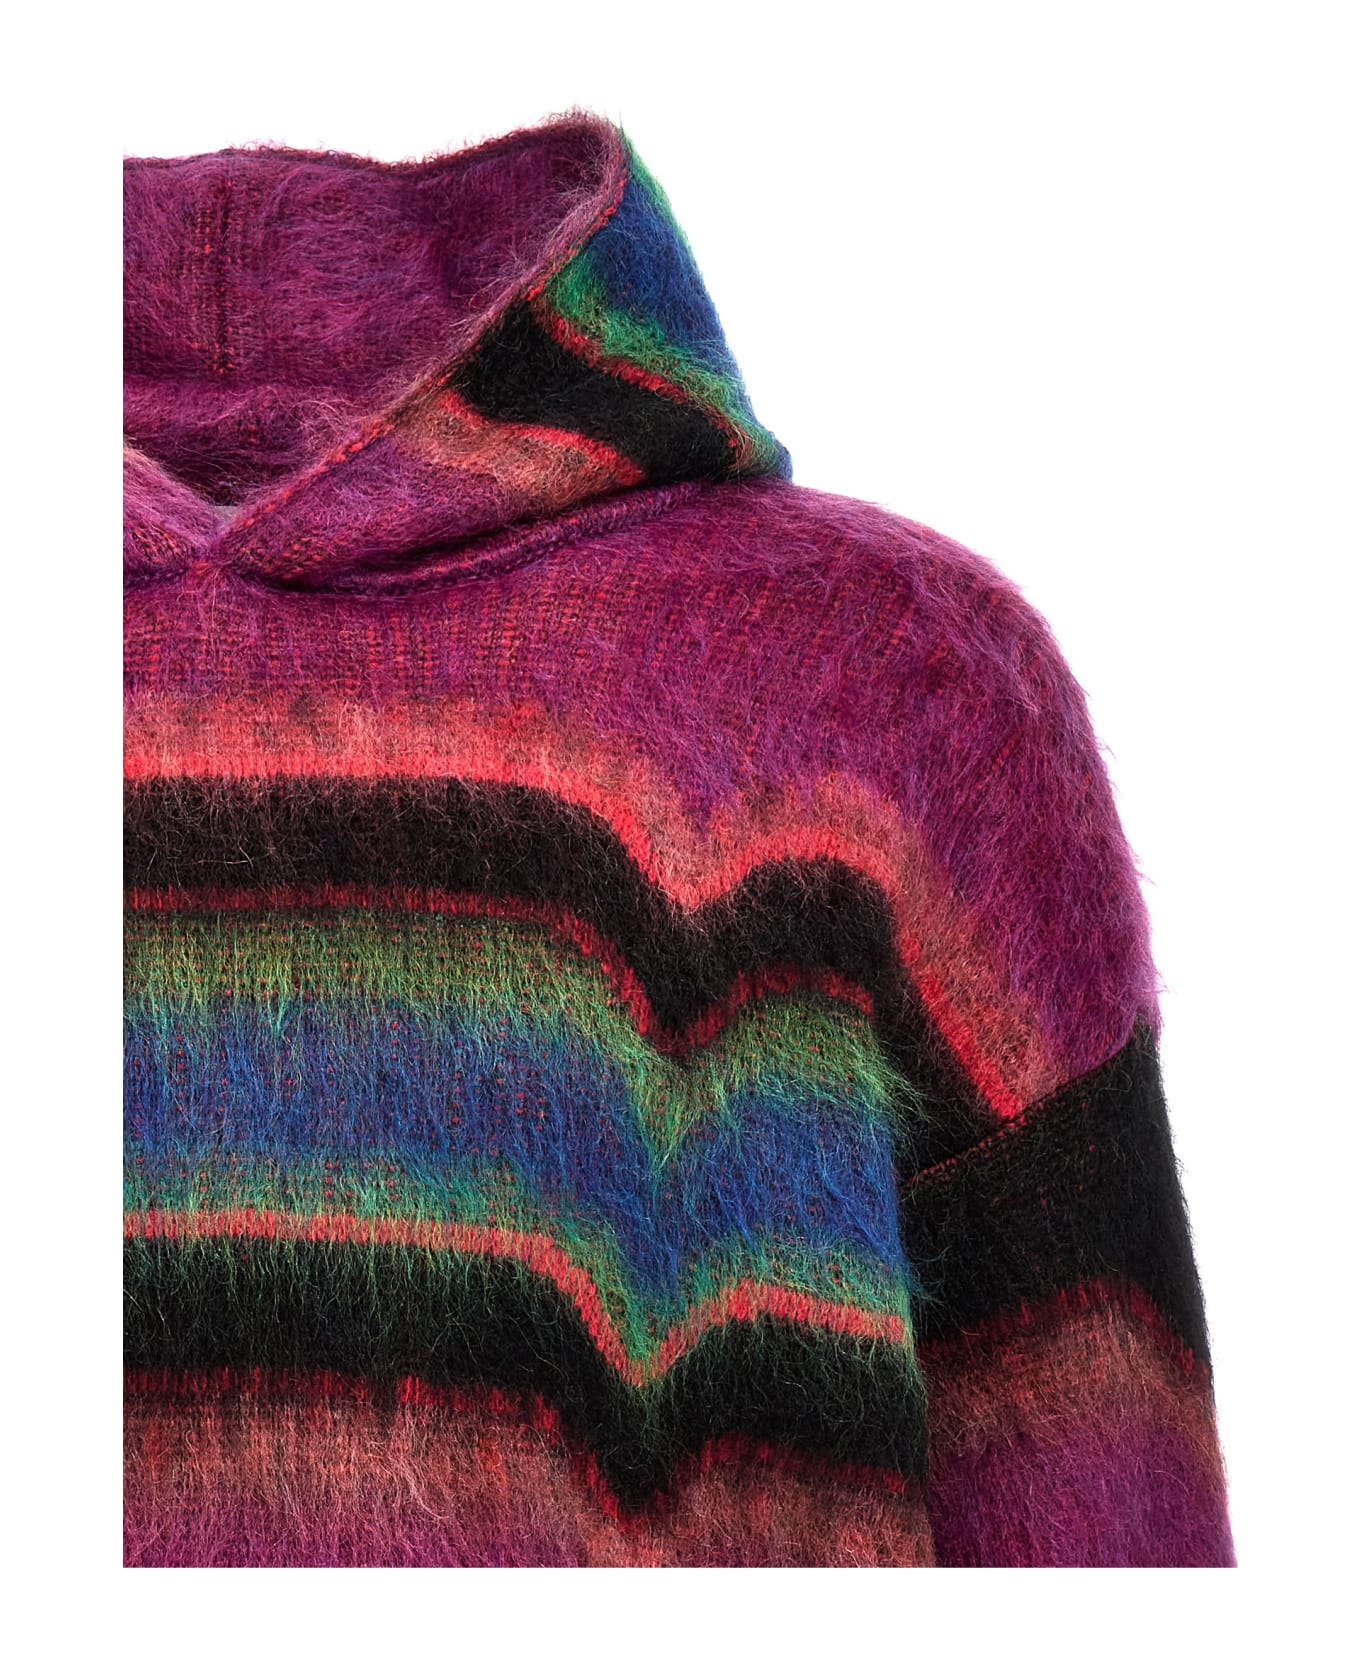 Avril8790 'skateboard' Hooded Sweater - Multicolor ニットウェア